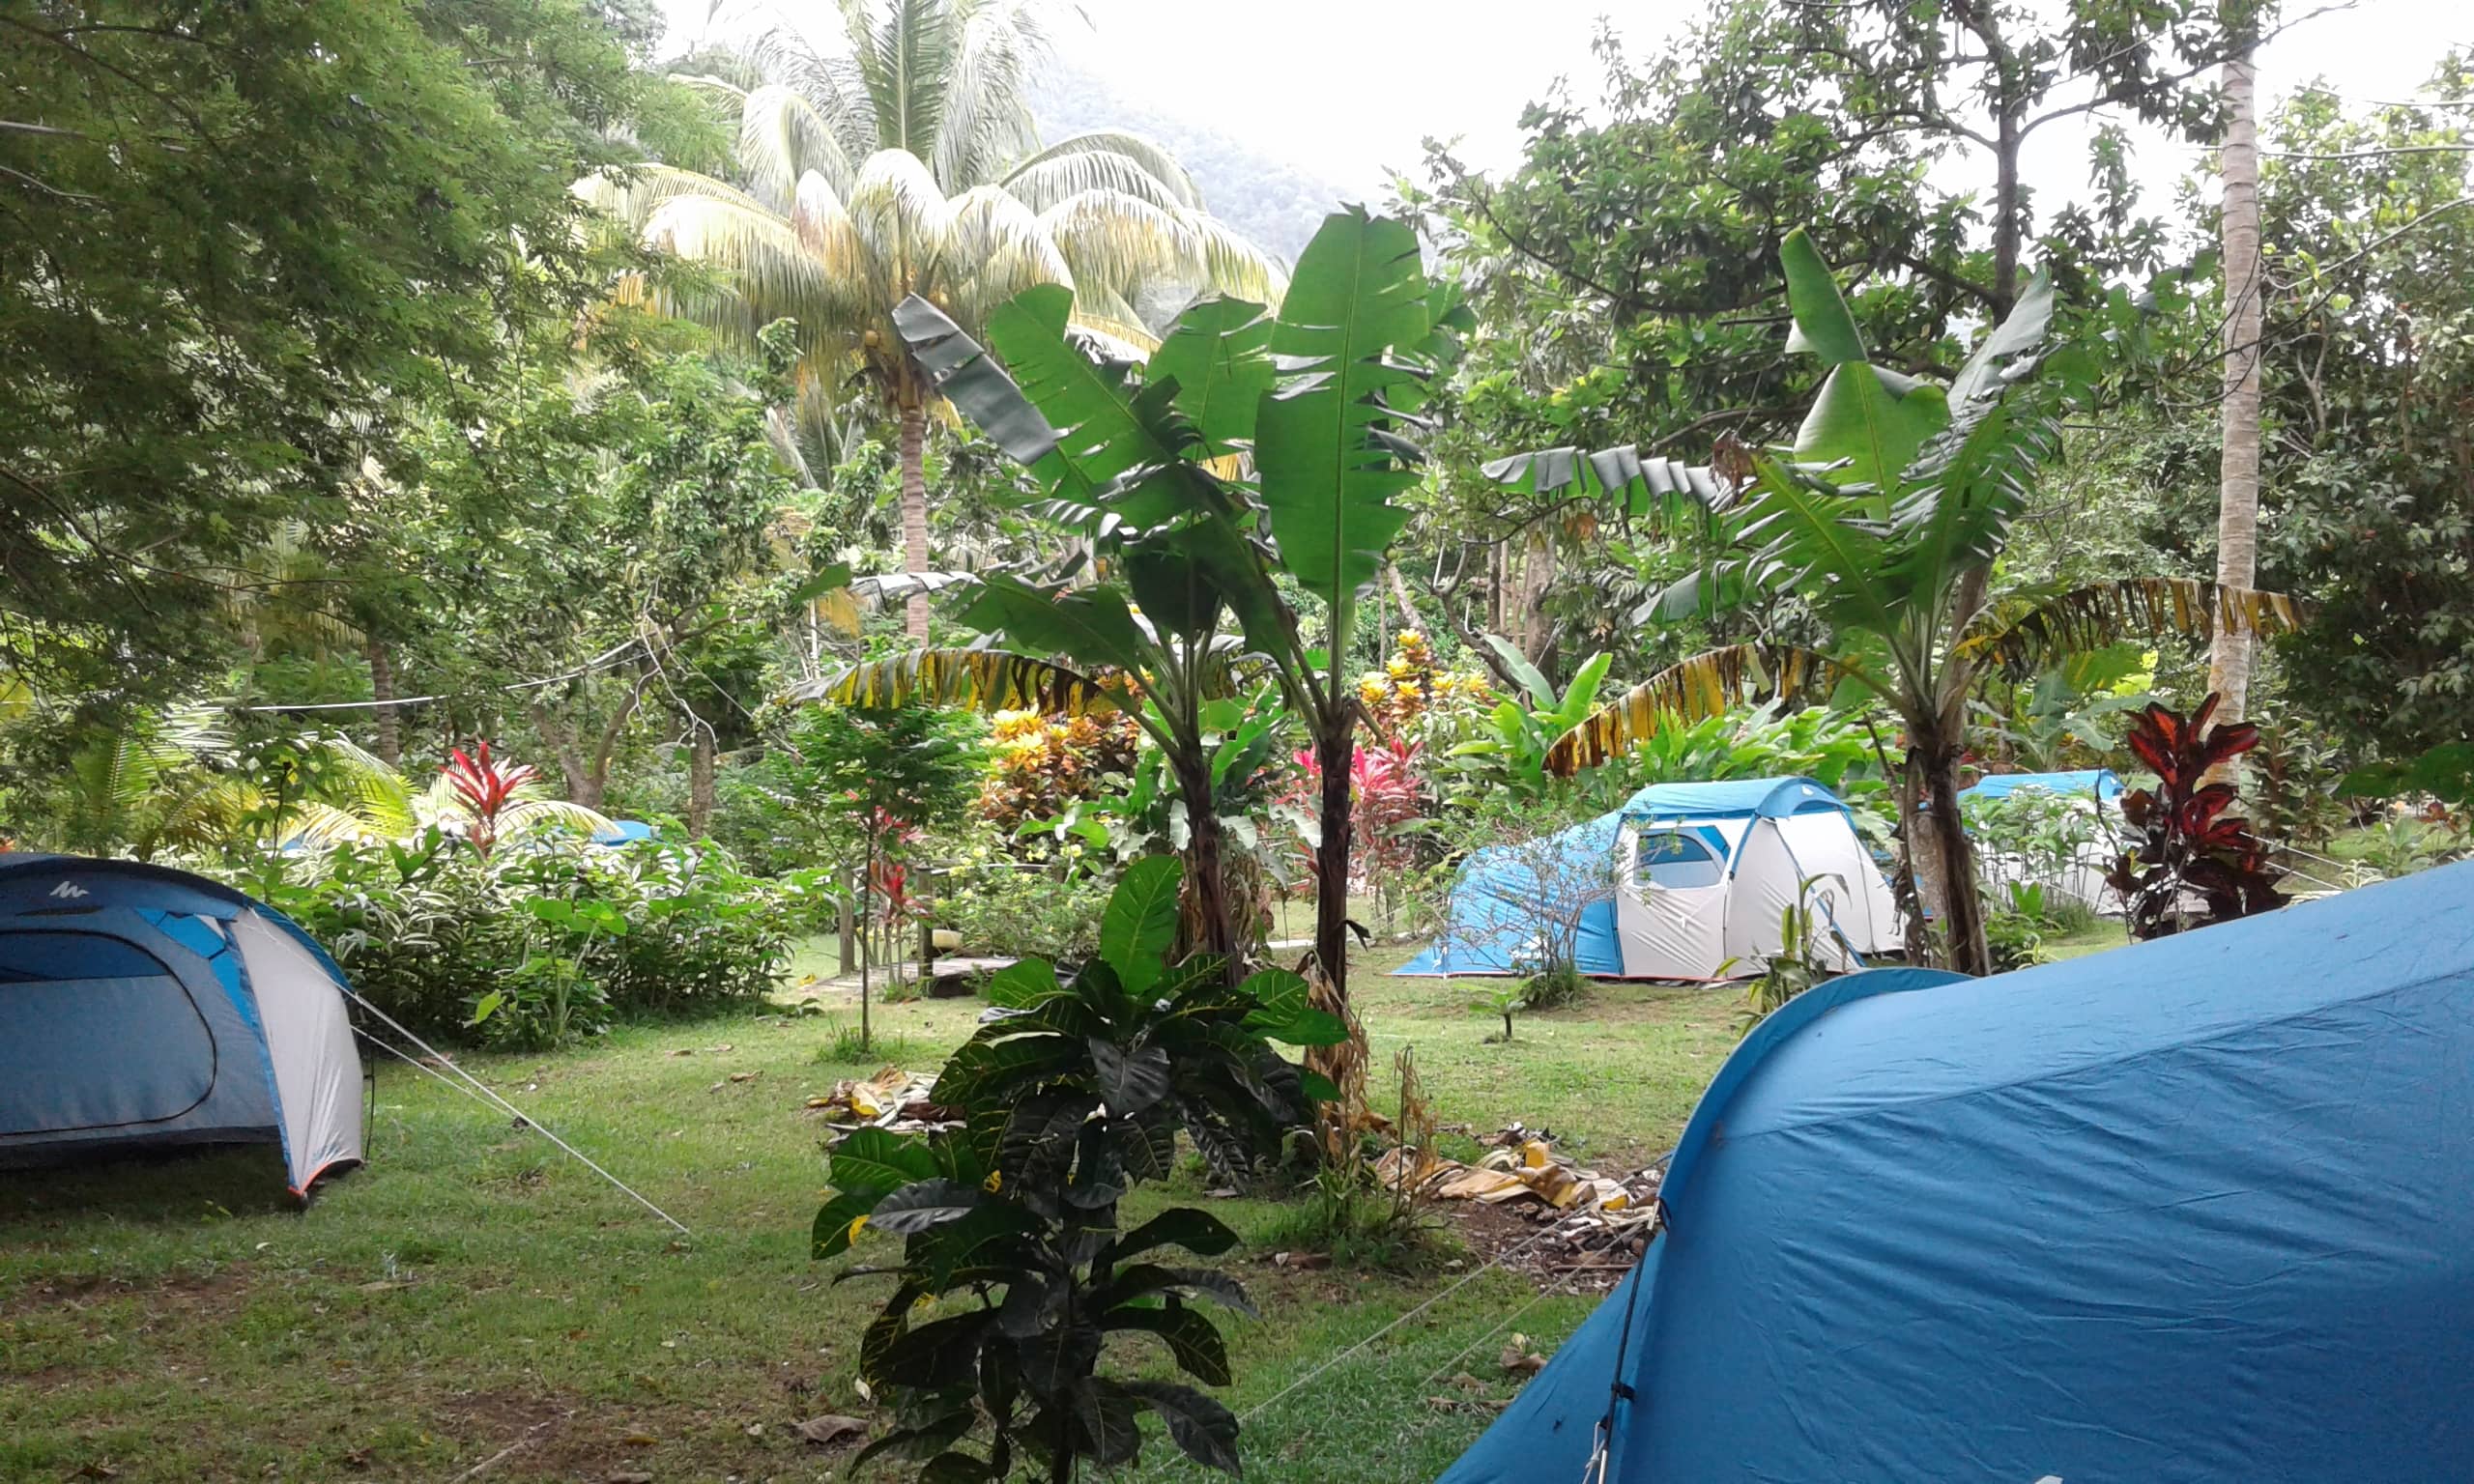 Big Banana Campground